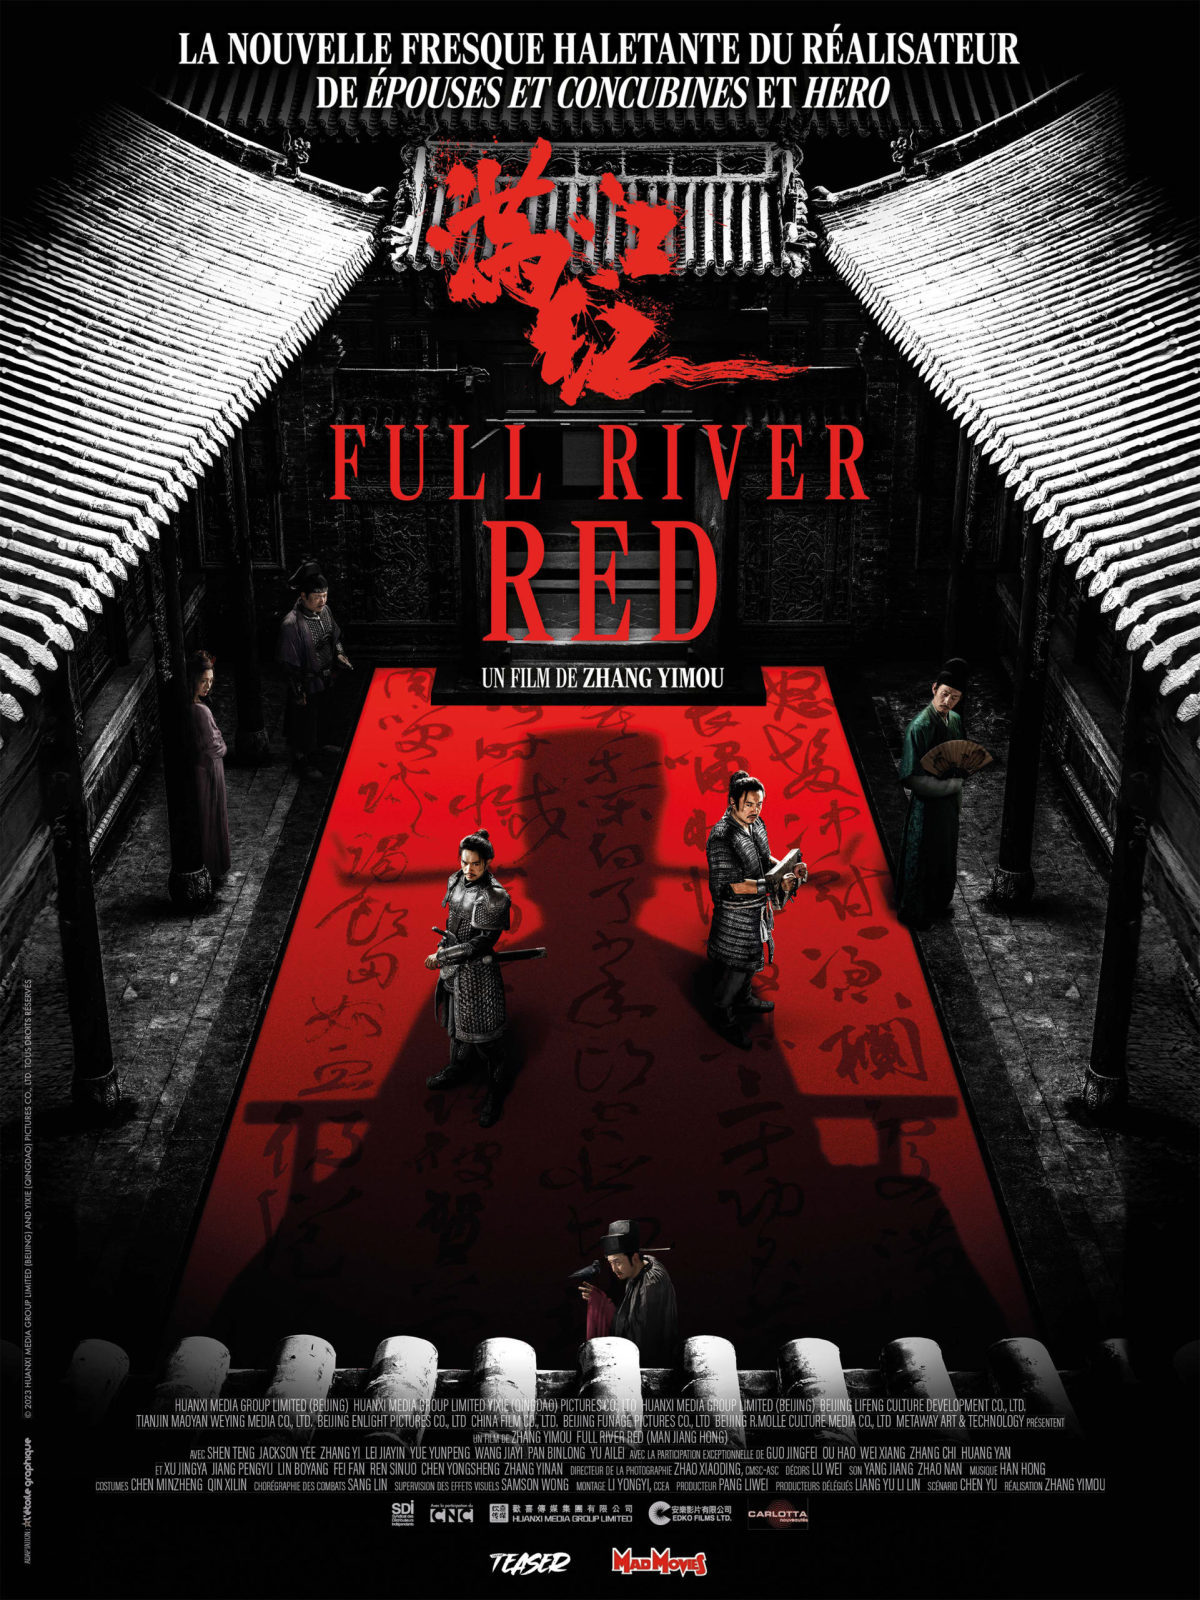 Full river red